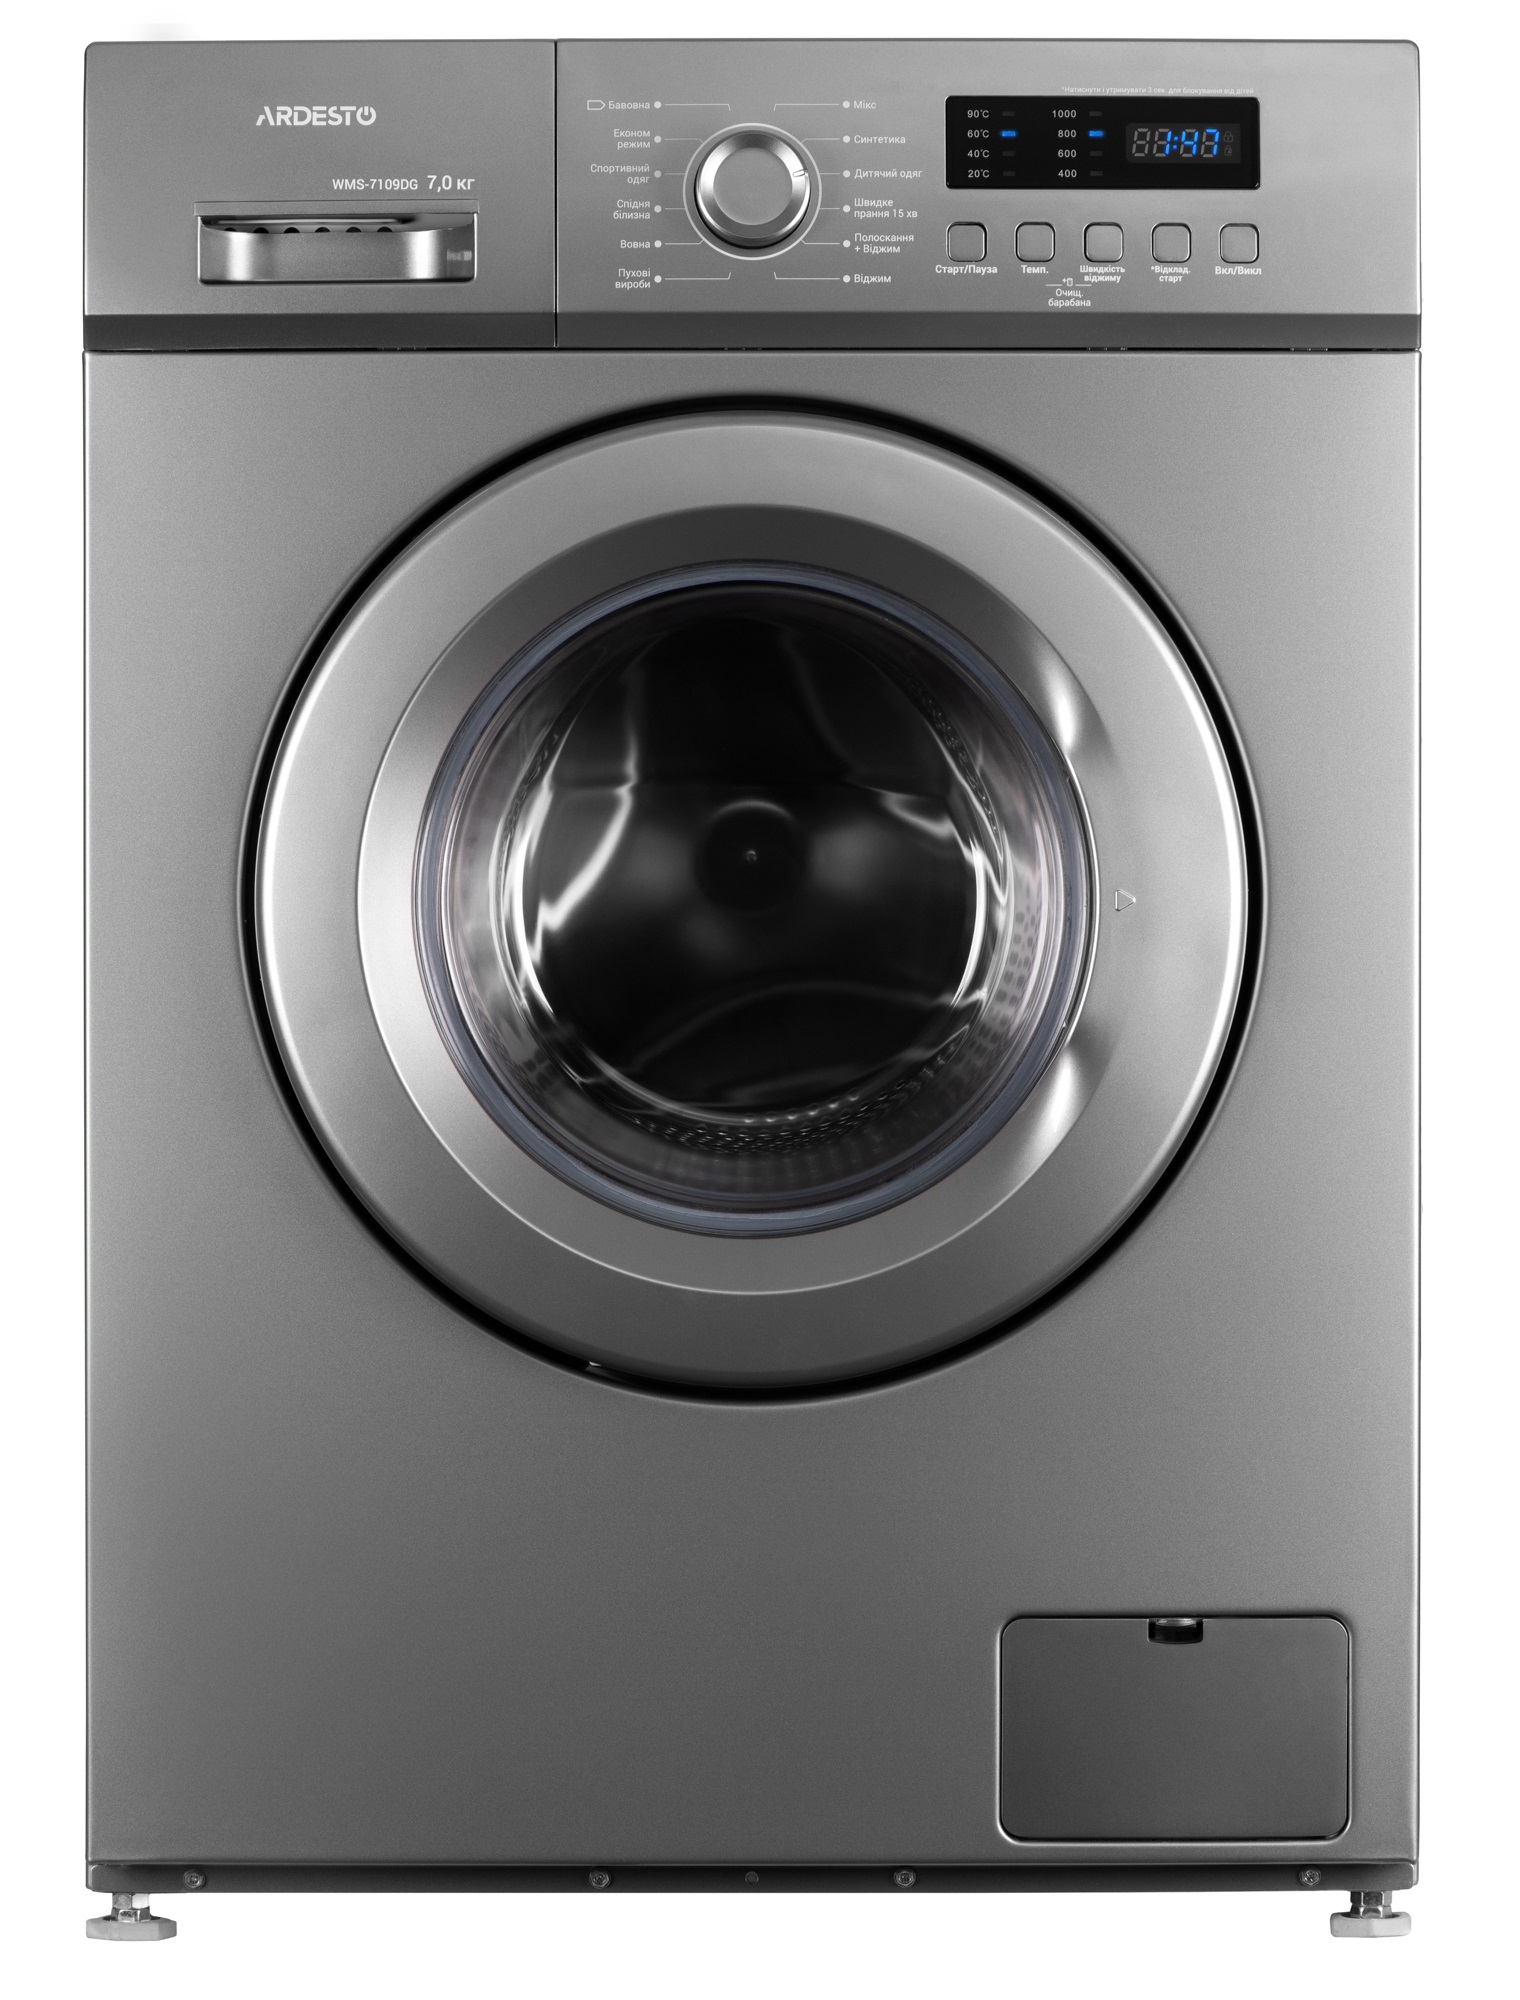 Інструкція пральна машина ARDESTO WMS-7109DG